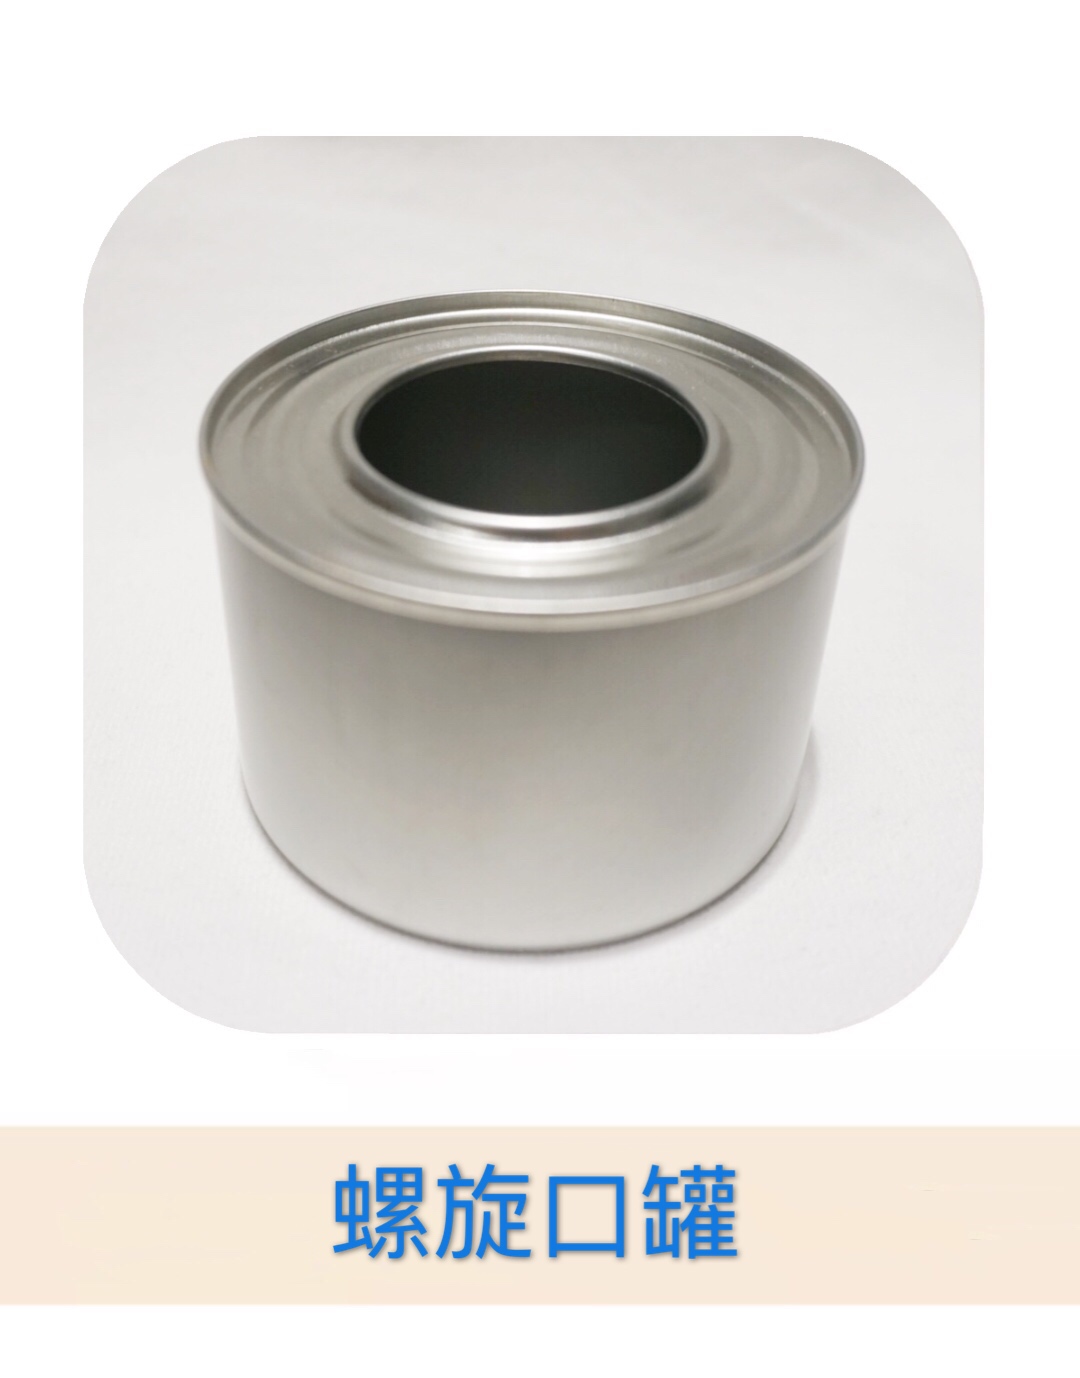 马口铁制品 环保油罐 可定制 固体 液体酒精罐4